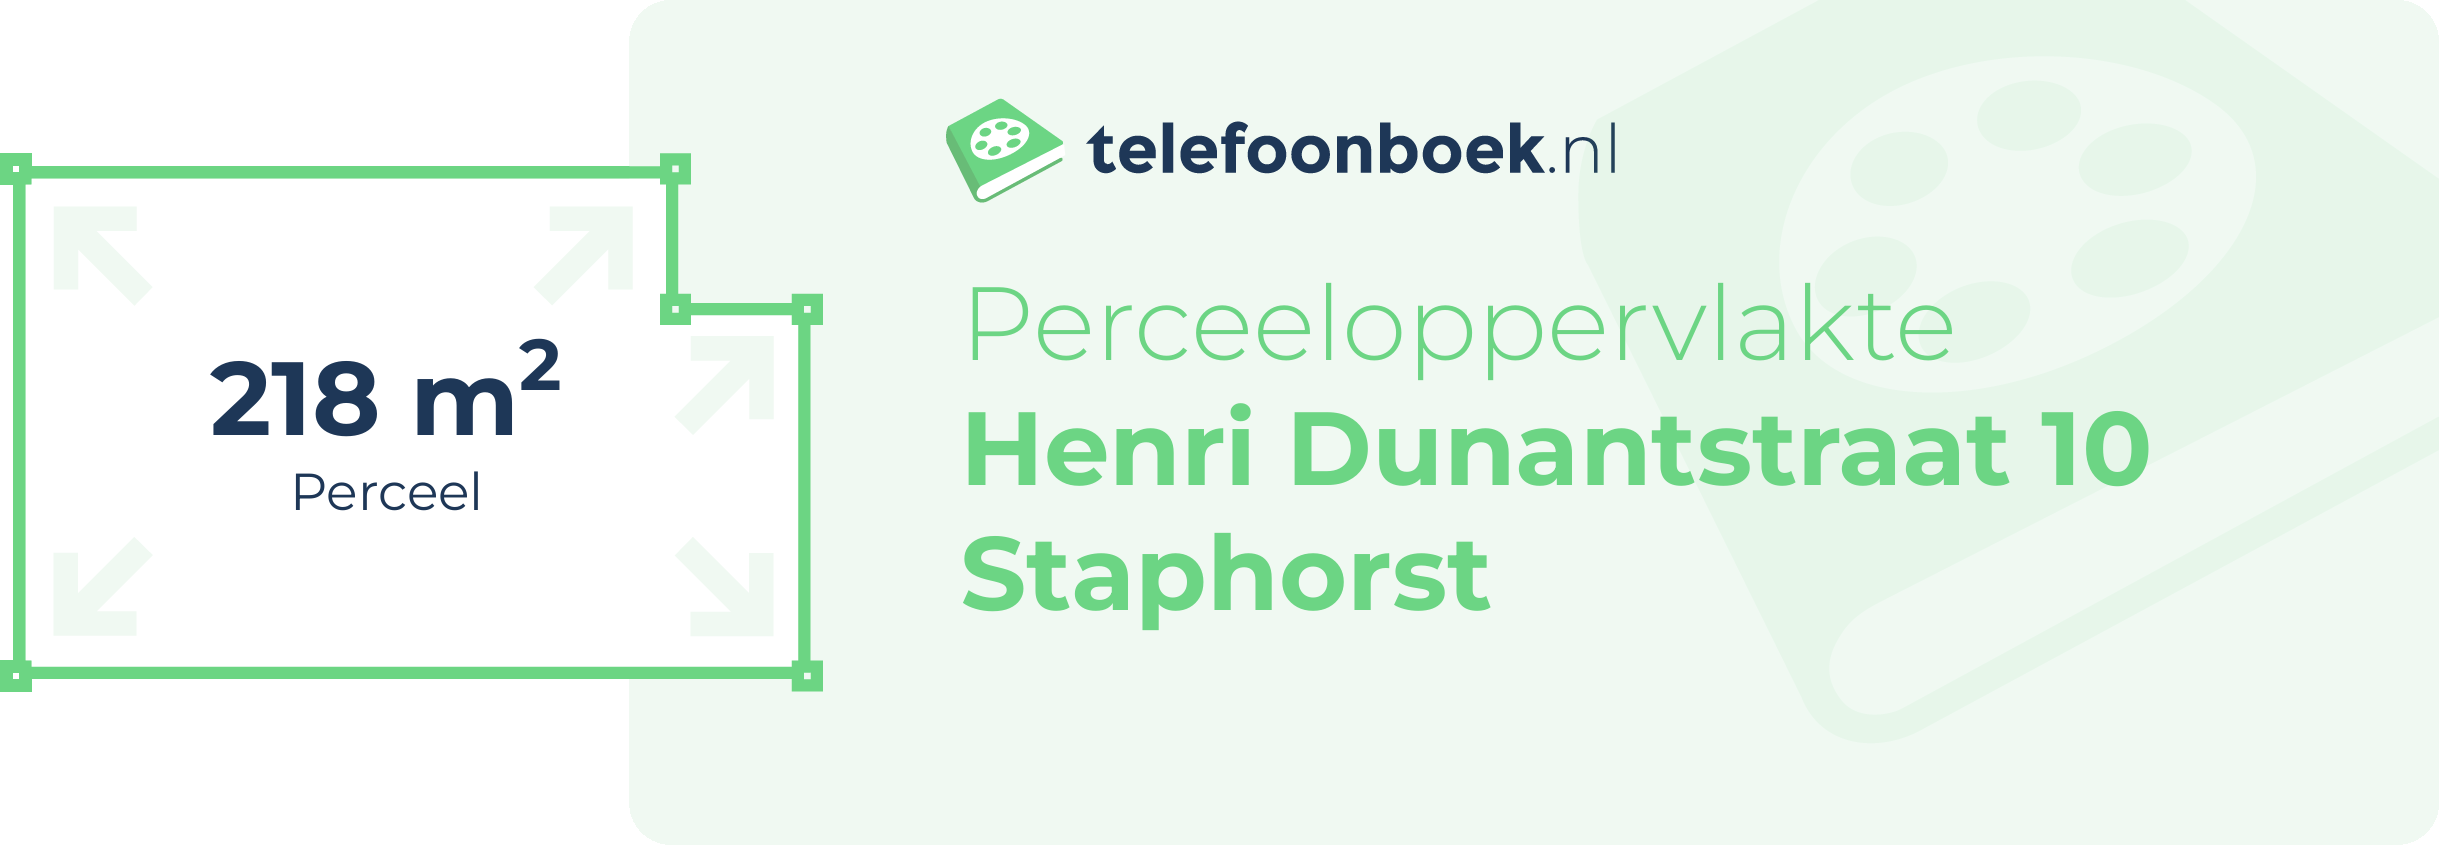 Perceeloppervlakte Henri Dunantstraat 10 Staphorst